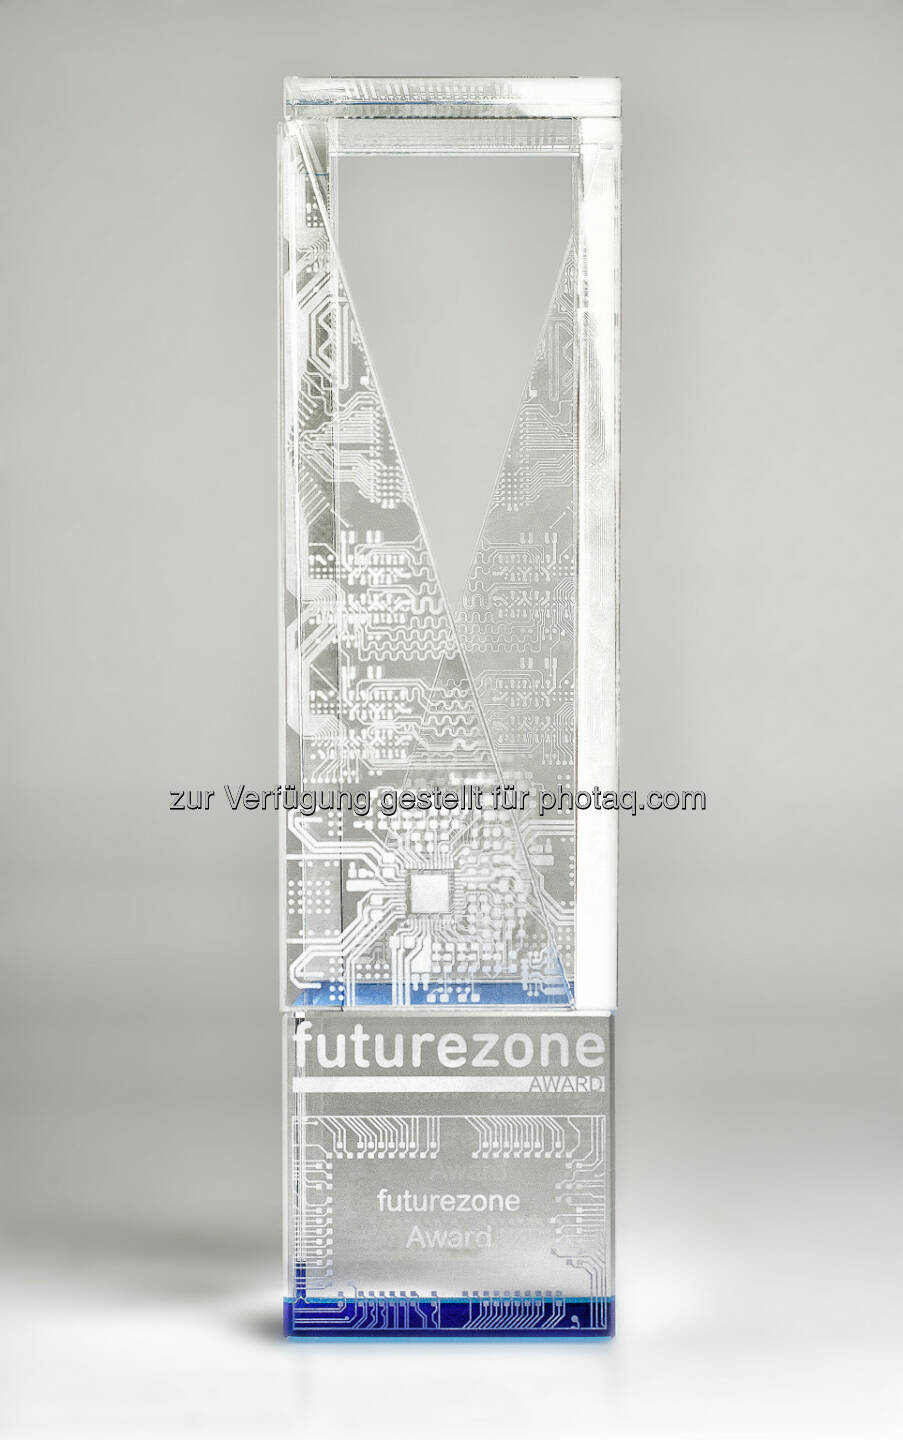 futurezone award. Die Trophäe by AT&S